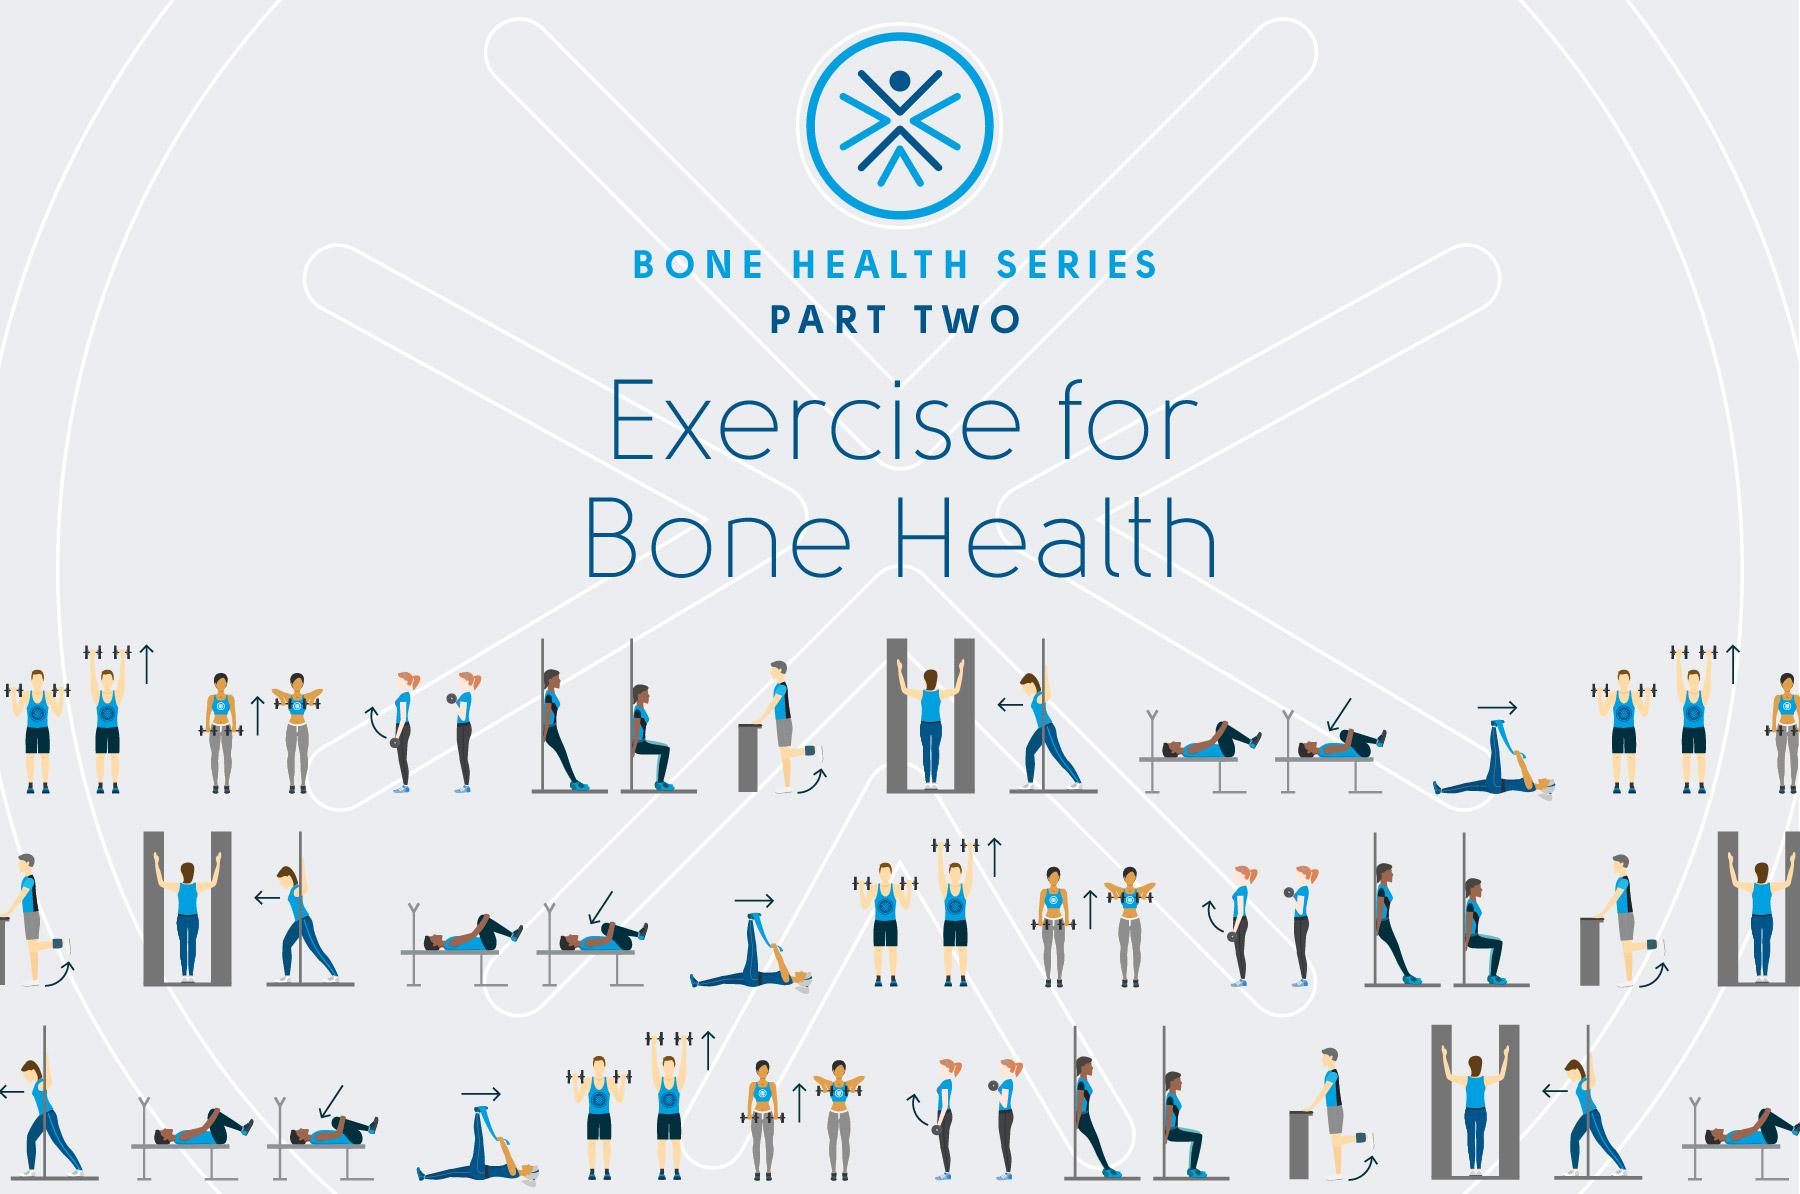 Training methods for bone health